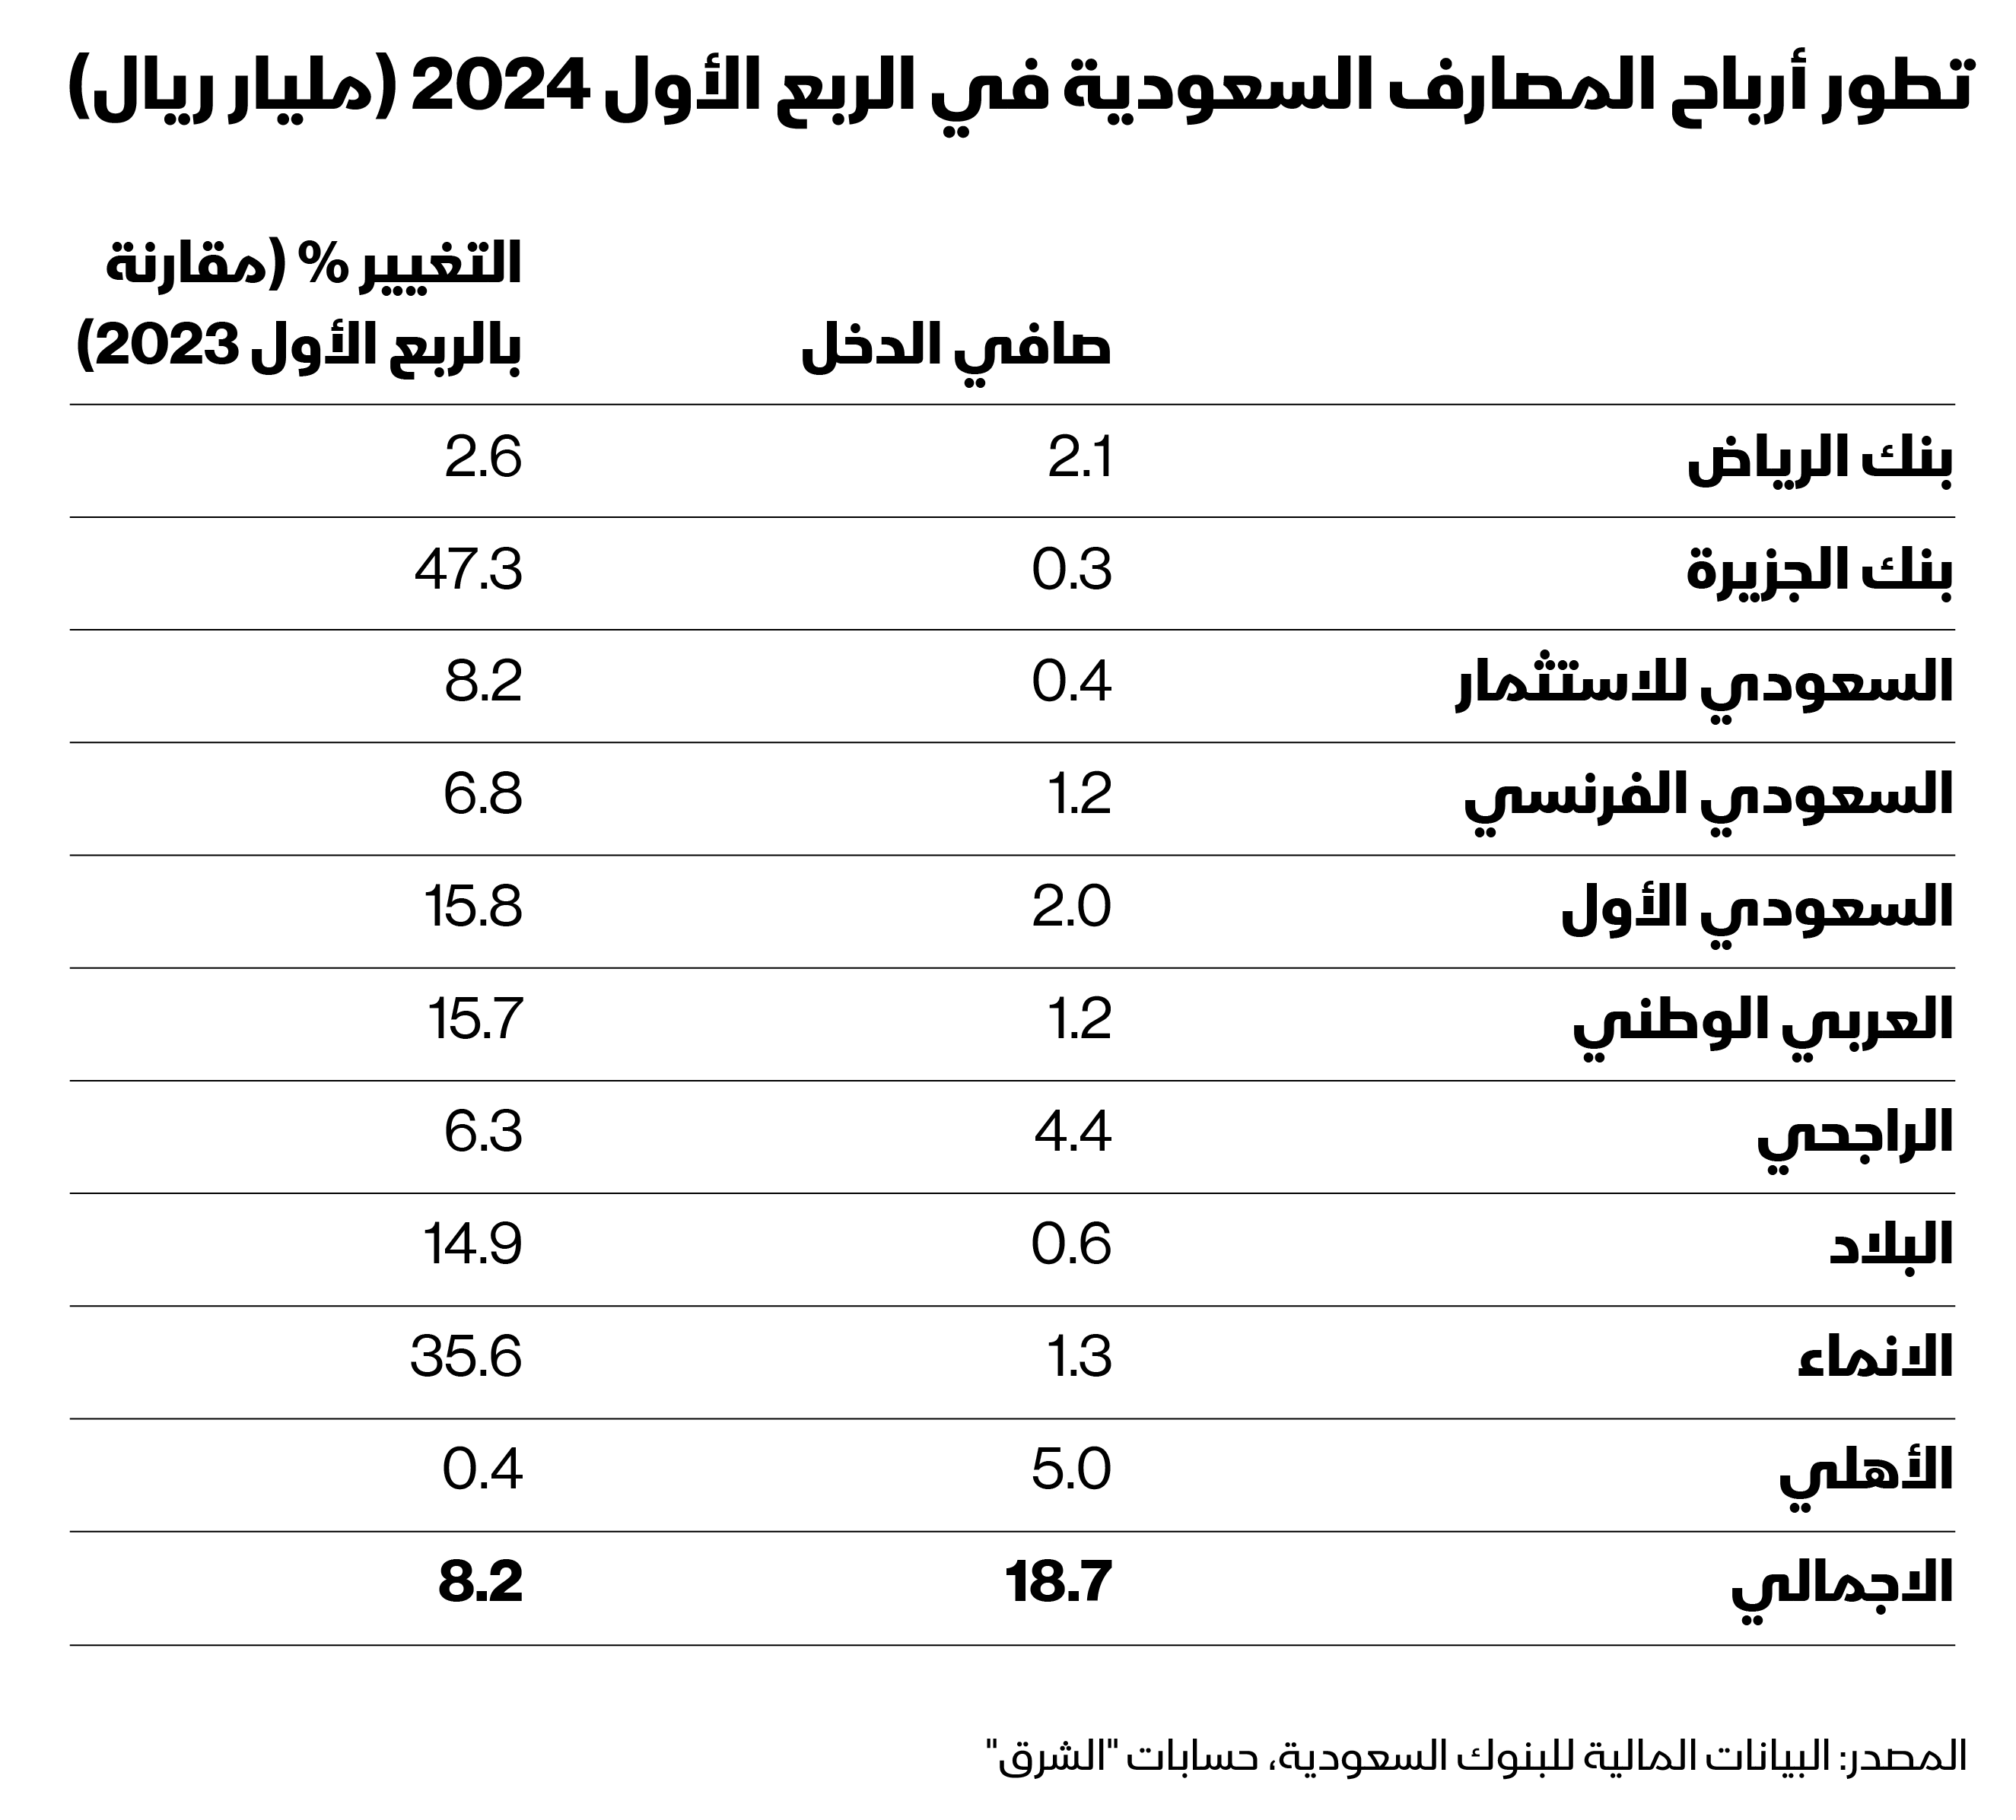 تطور أرباح البنوك السعودية في الربع الأول 2024